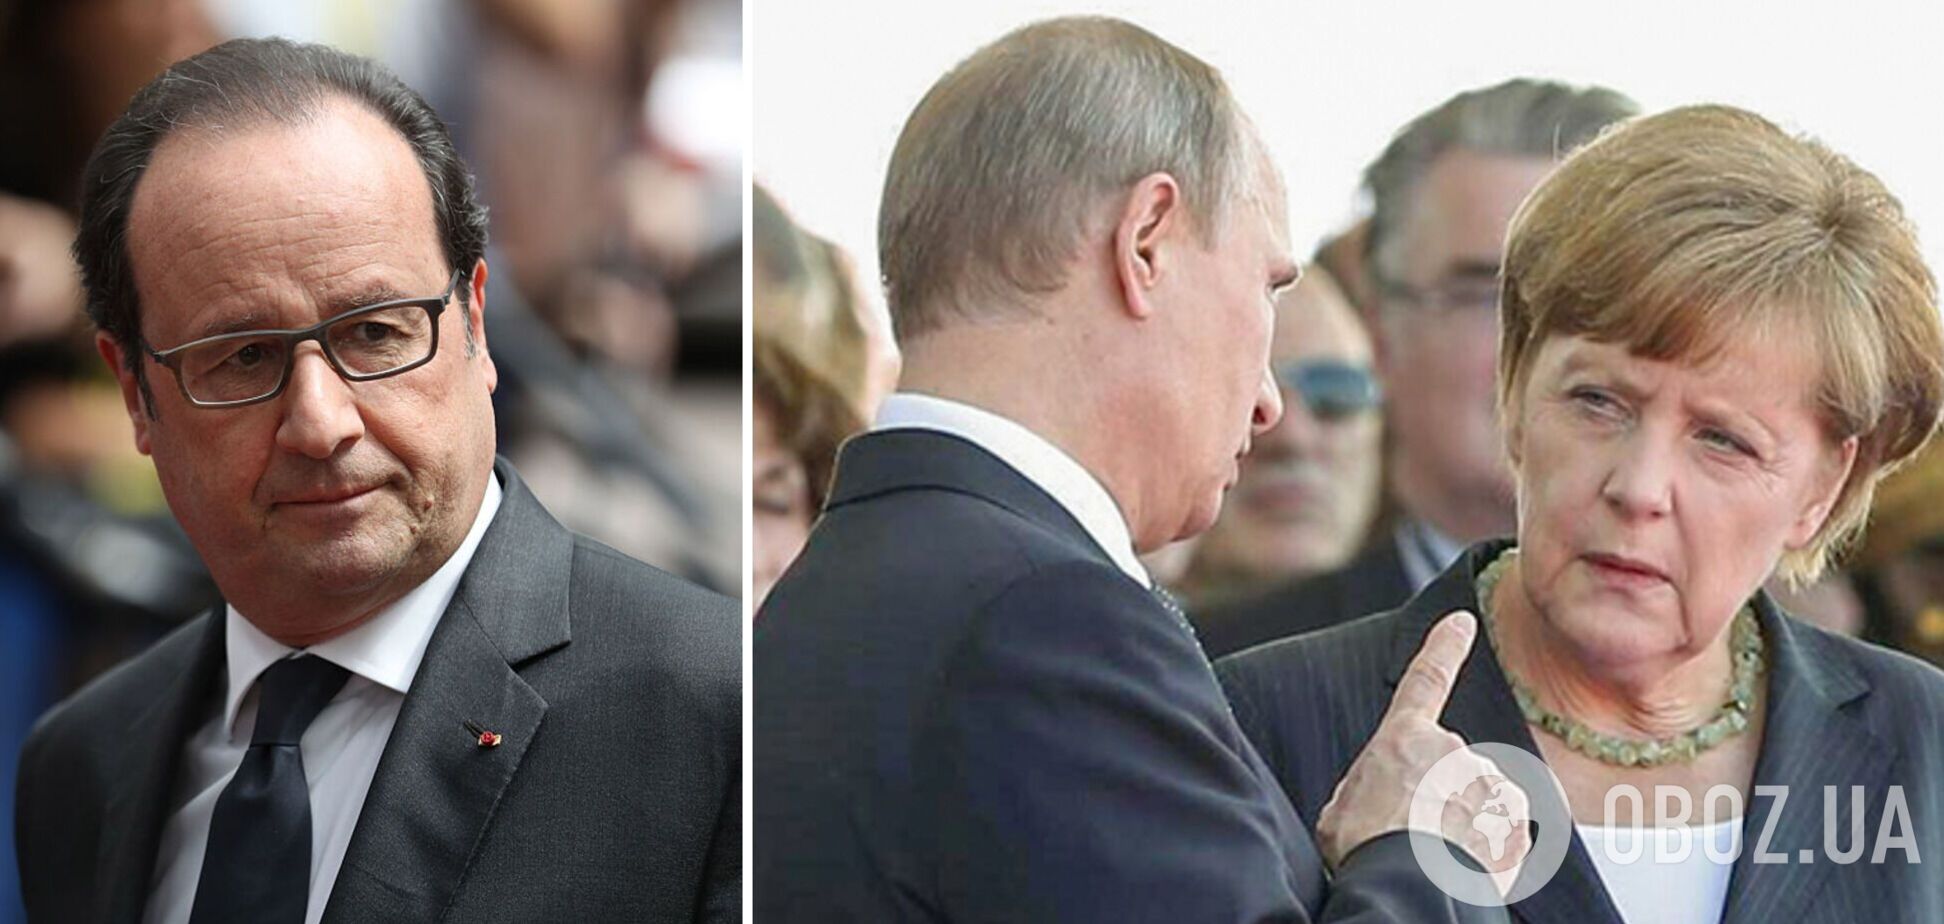 Олланд о 2014 году и санкциях против РФ: Запад не смог понять, что Путин готовится к войне